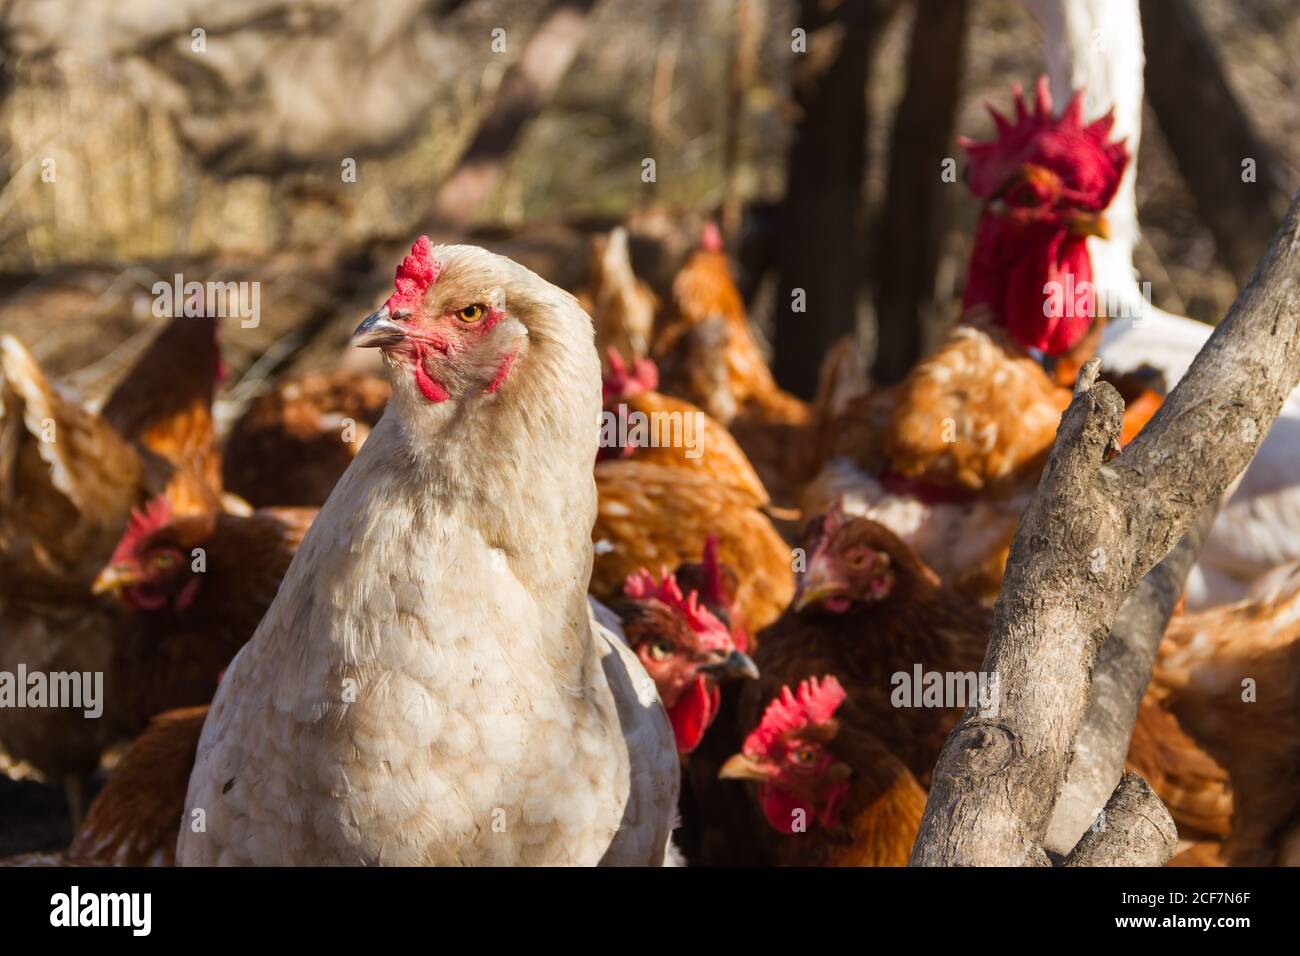 Weiße brahma-Henne mit Federn an den Füßen im Hühnerstall Stockfotografie -  Alamy